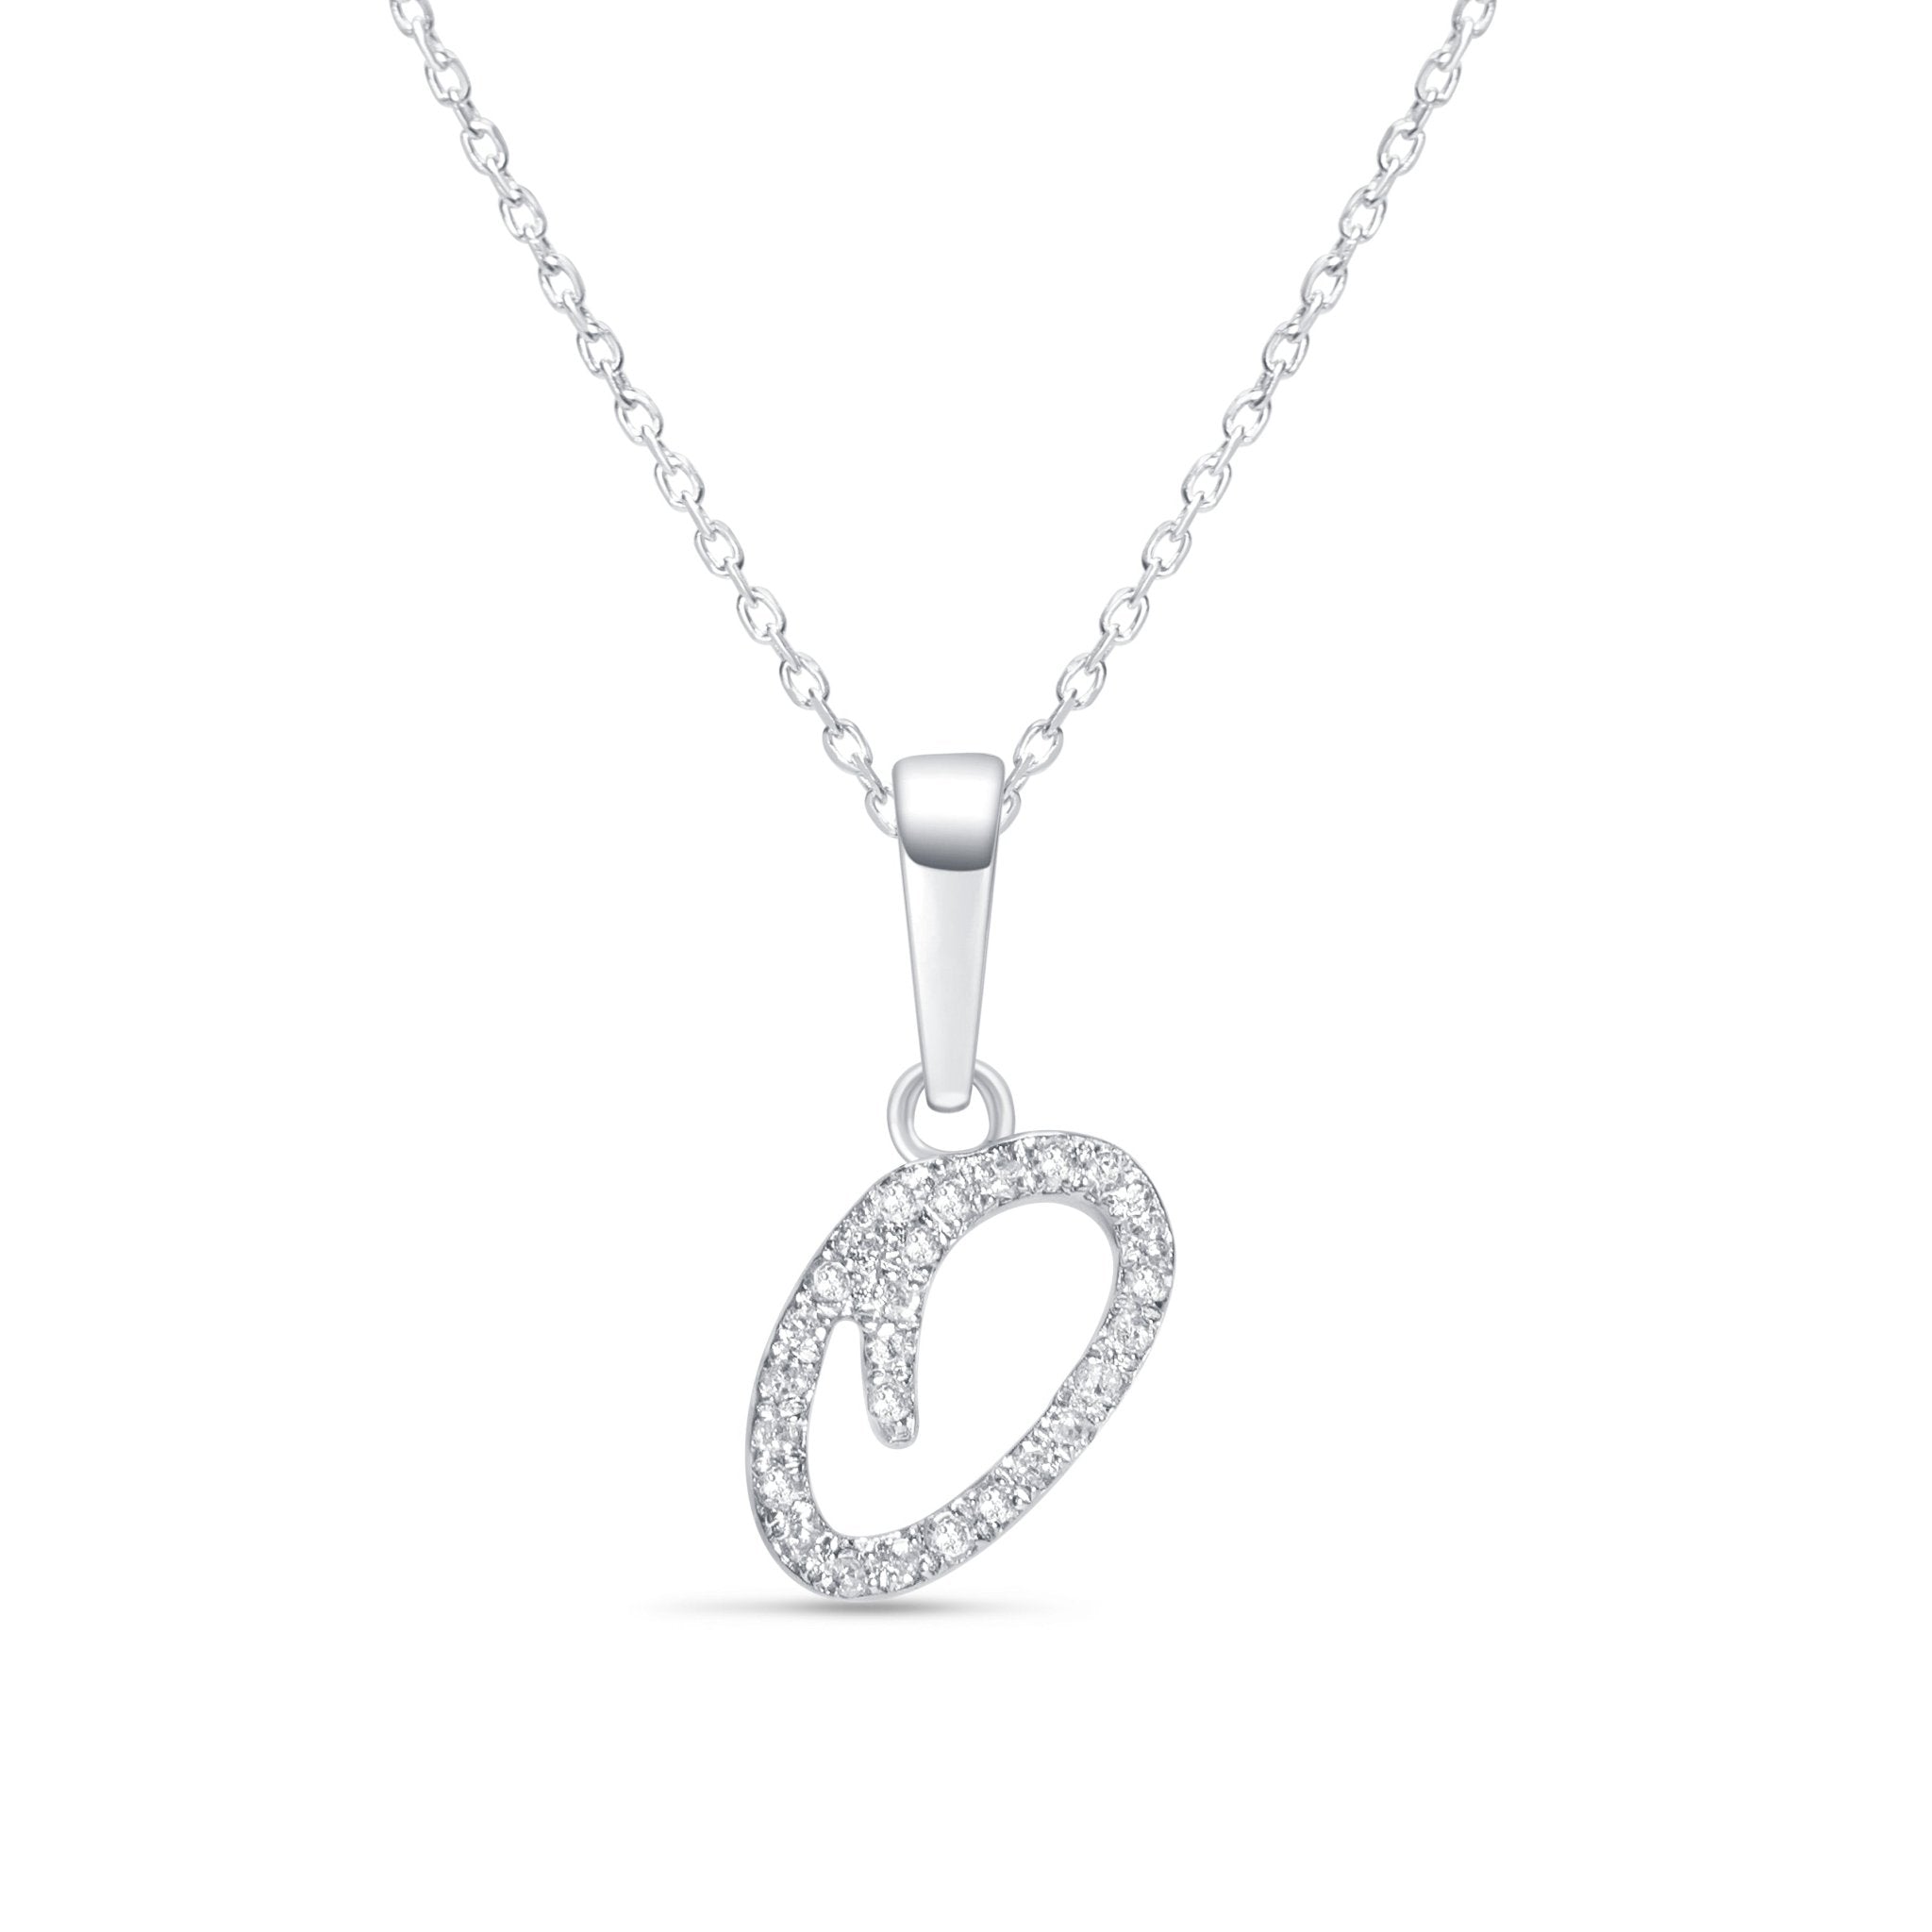 Cursive Diamond Initial Necklace - Q Necklaces Estella Collection #product_description# 18557 14k Diamond Gemstone #tag4# #tag5# #tag6# #tag7# #tag8# #tag9# #tag10# 14k White Gold